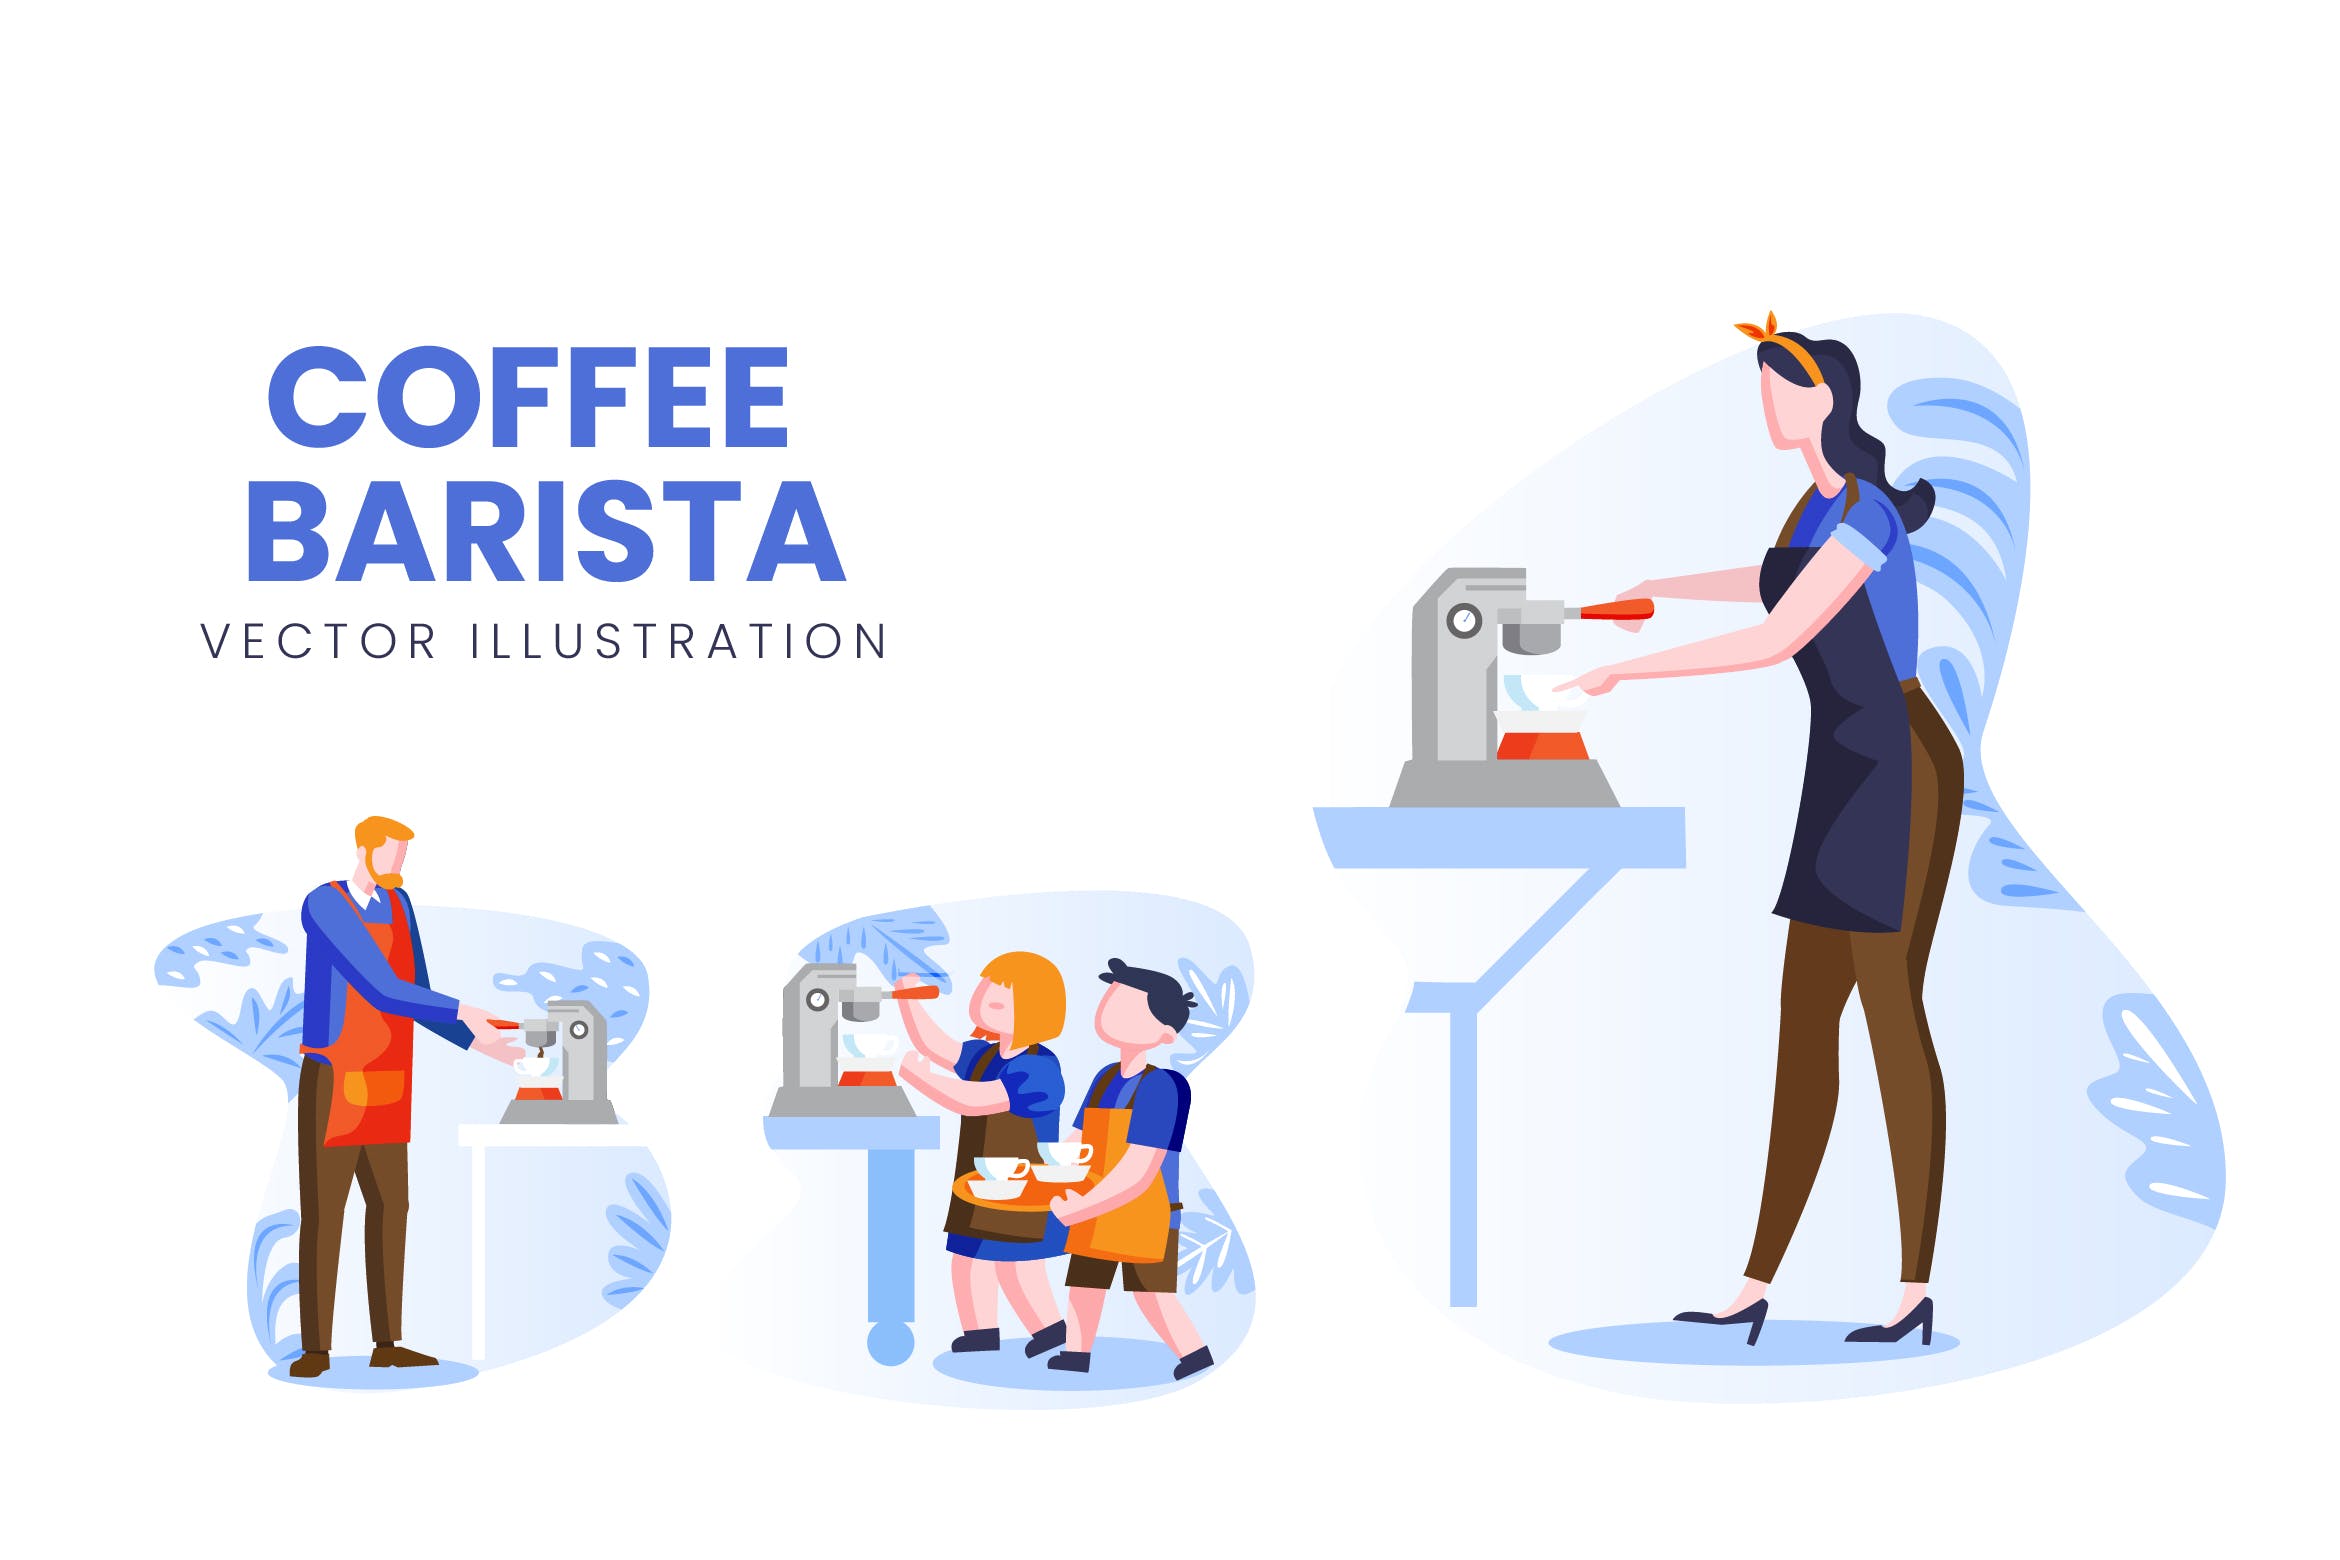 咖啡师人物形象素材库精选手绘插画矢量素材 Coffee Barista Vector Character Set插图